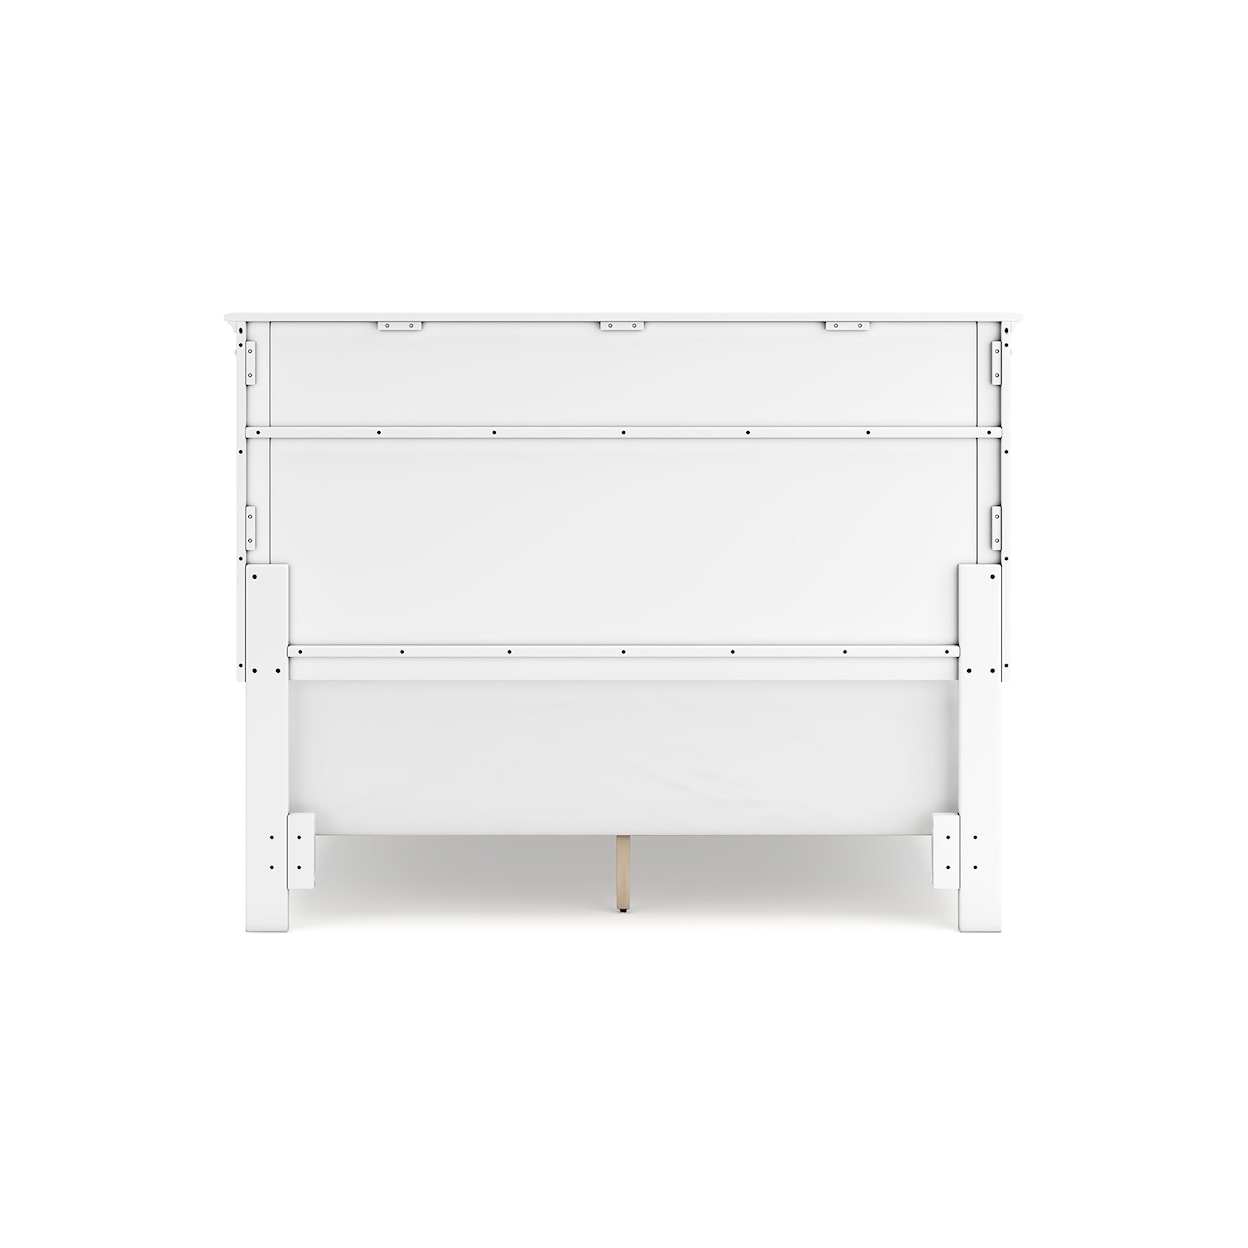 Benchcraft Fortman Queen Panel Bed